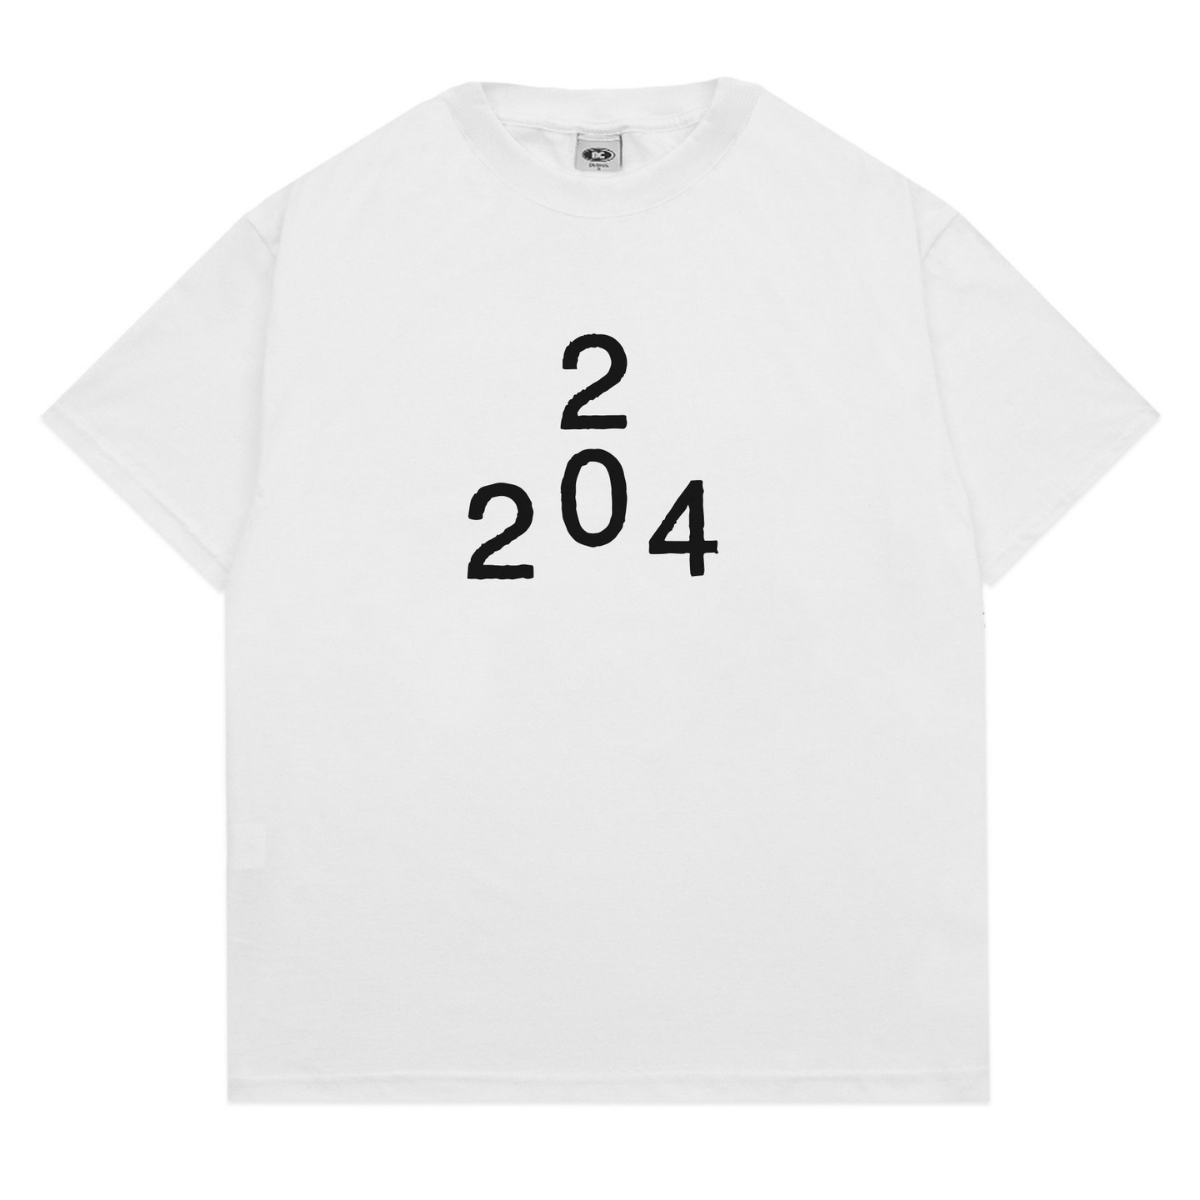 Barra Crew - Camiseta '2024' Branca